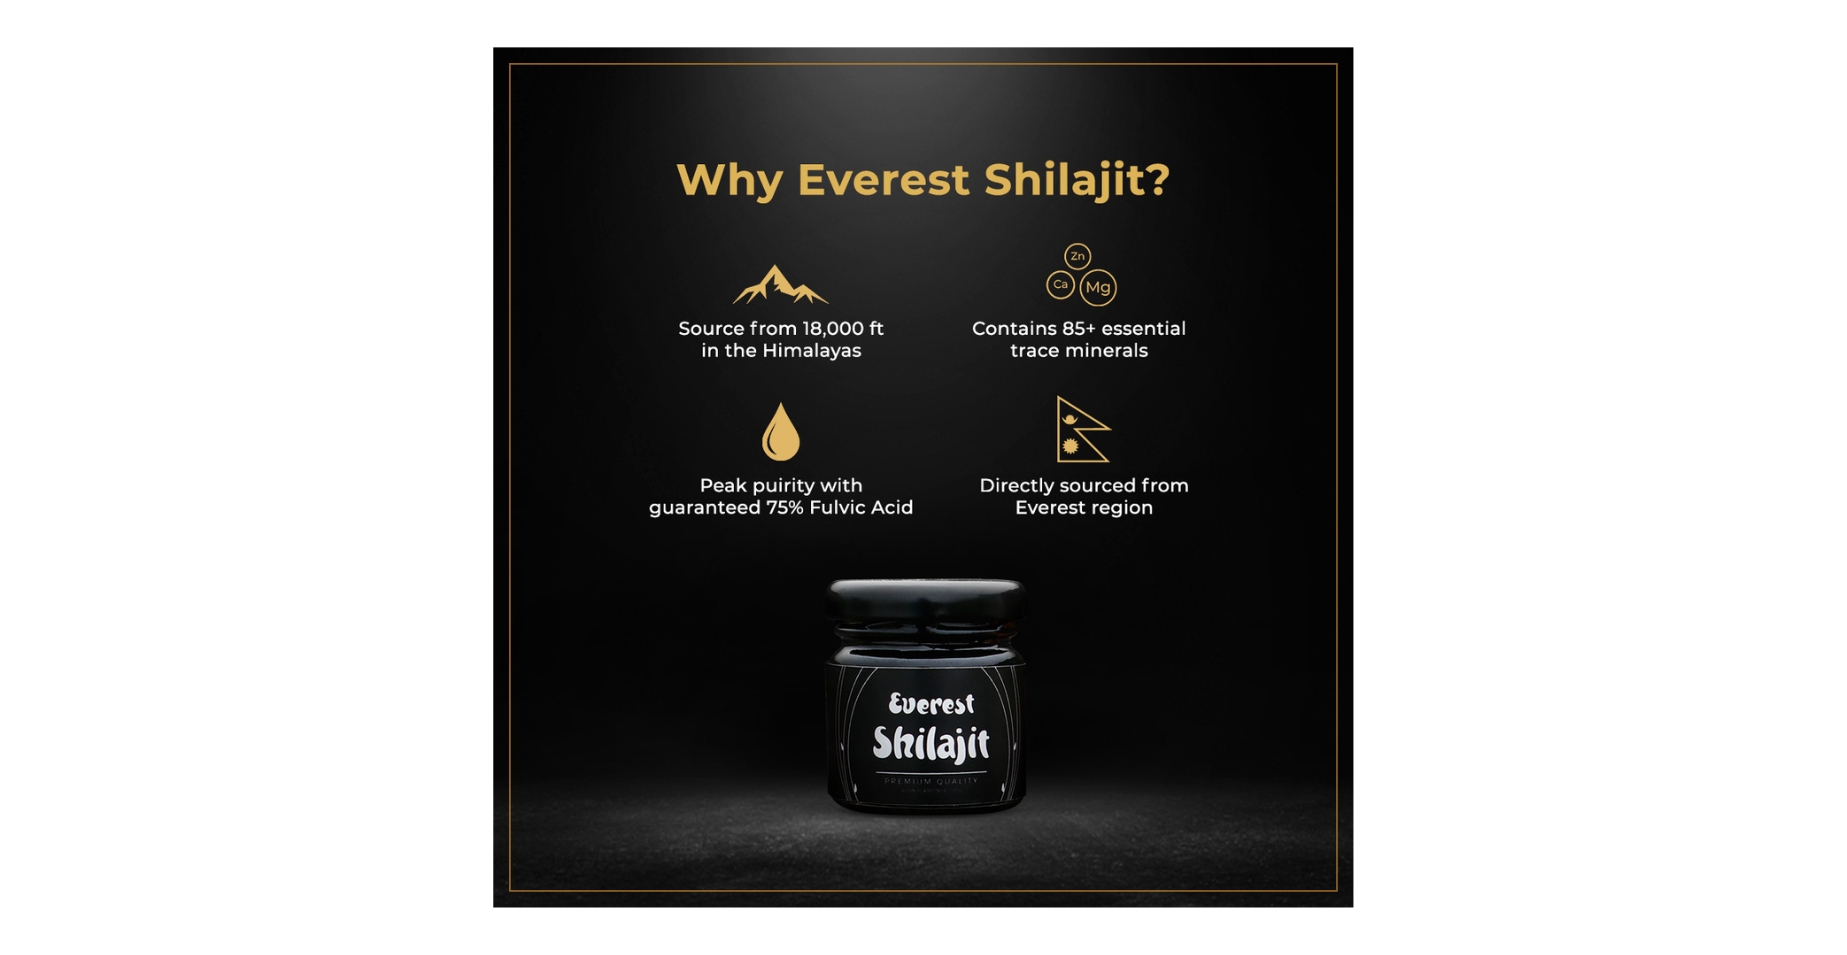 Everest Shilajit benefits